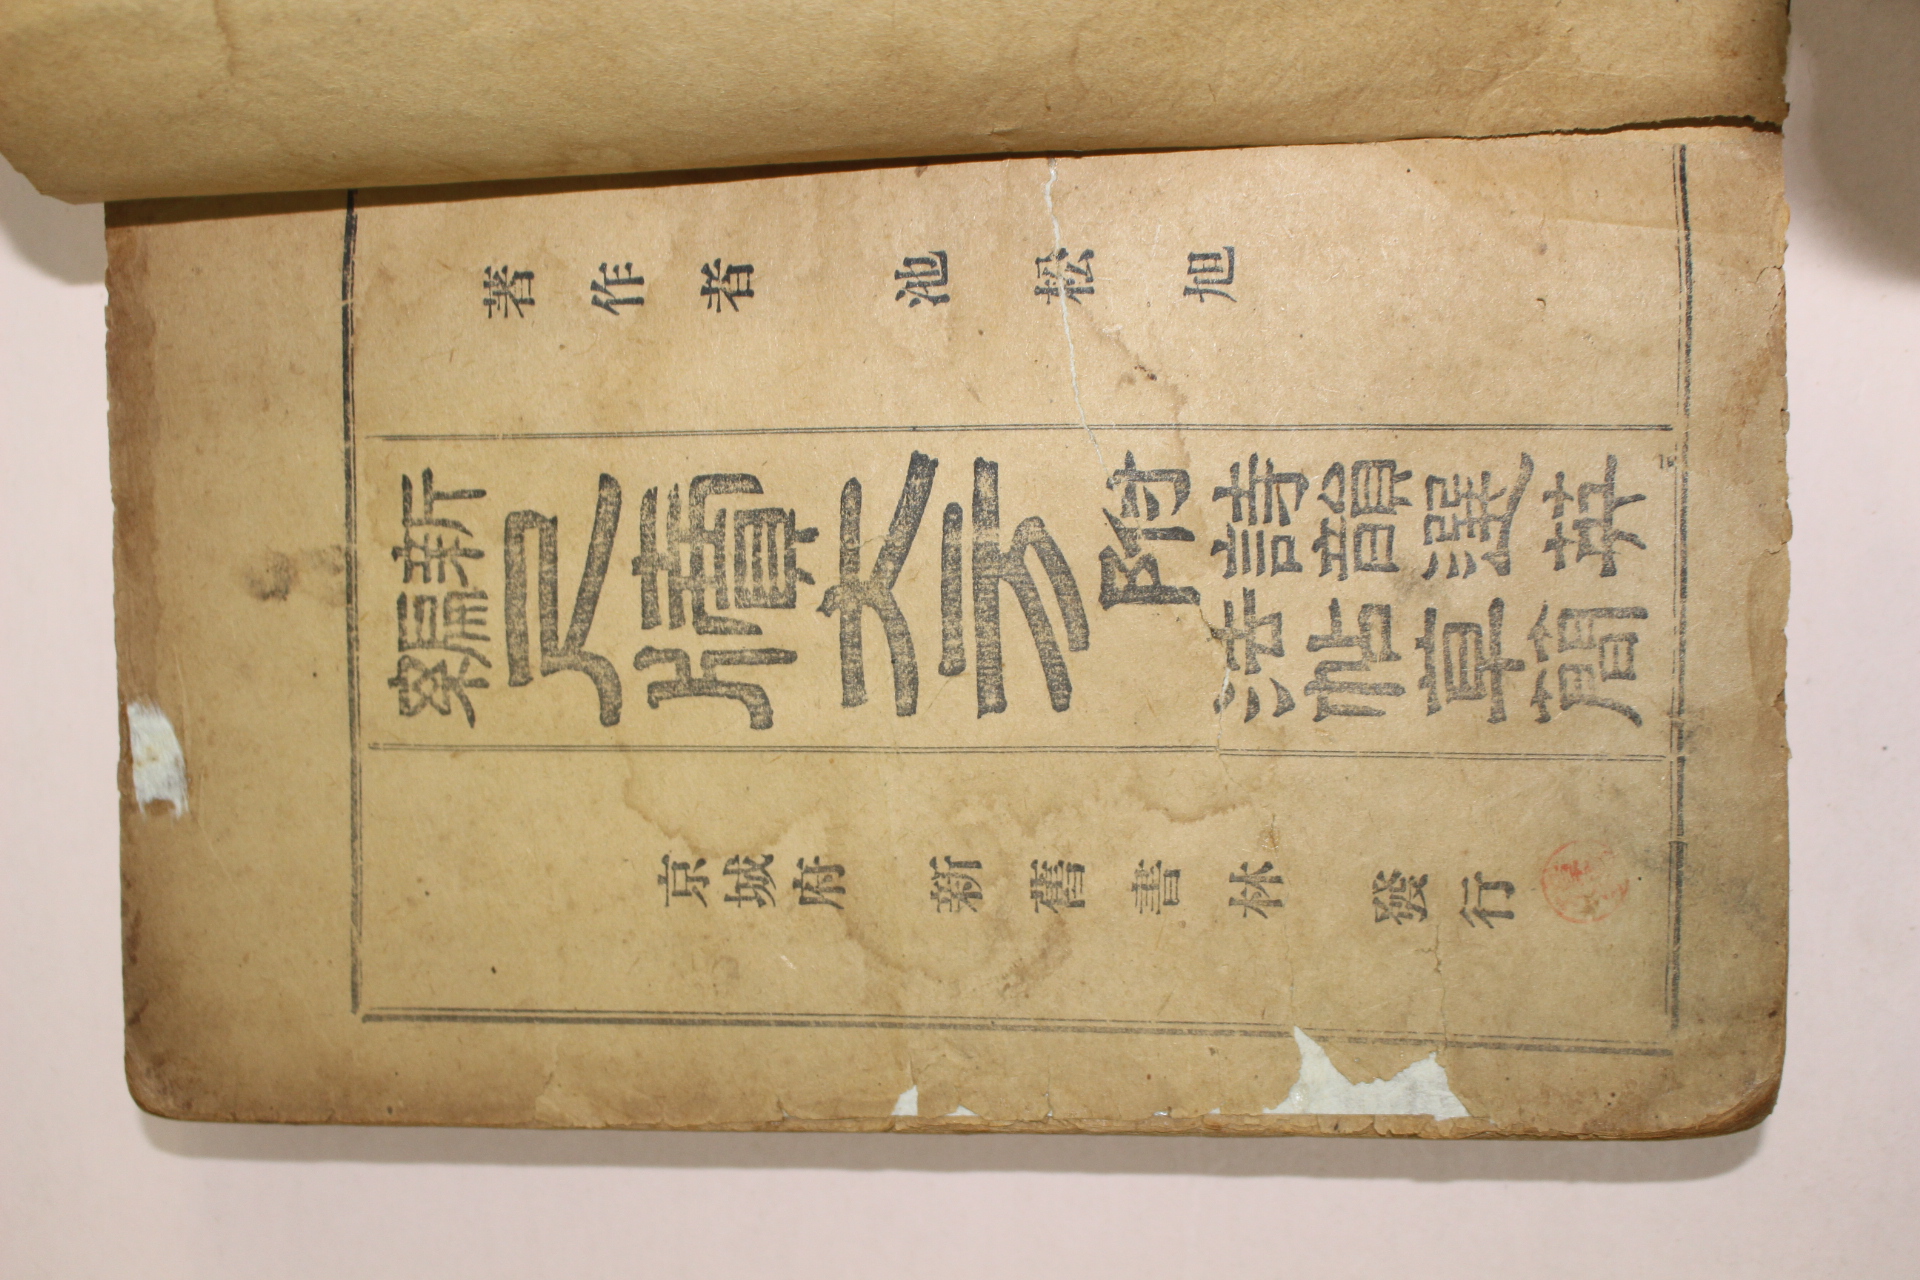 1917년 경성간행 신편 척독대방(尺牘大方) 1책완질